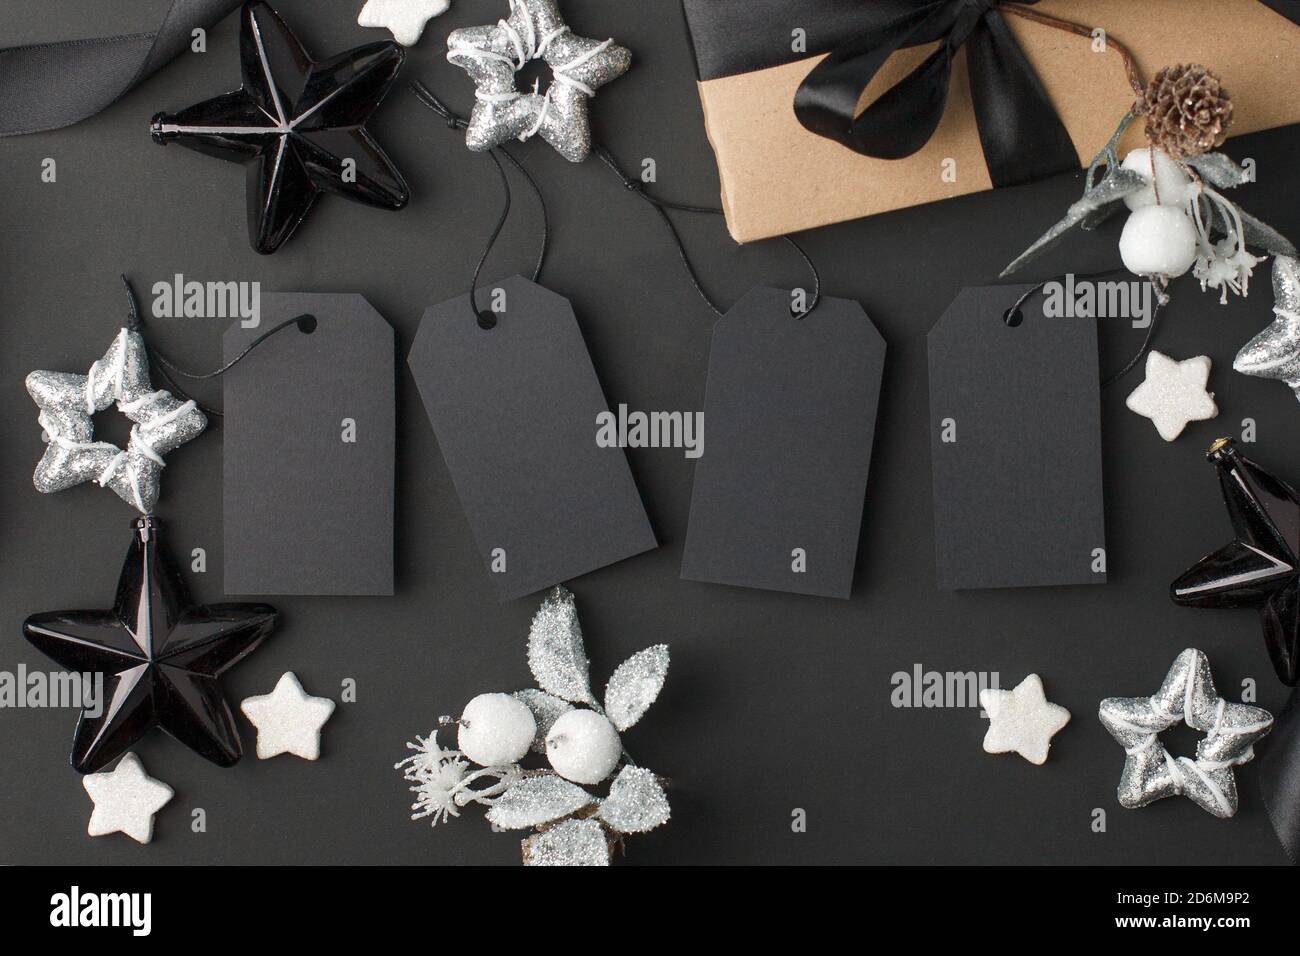 Año Nuevo 2021, Navidad Oferta de temporada - etiquetas con espacio de copia, caja de regalo y decoraciones sobre fondo negro. Concepto de lujo con estilo monocromo Foto de stock